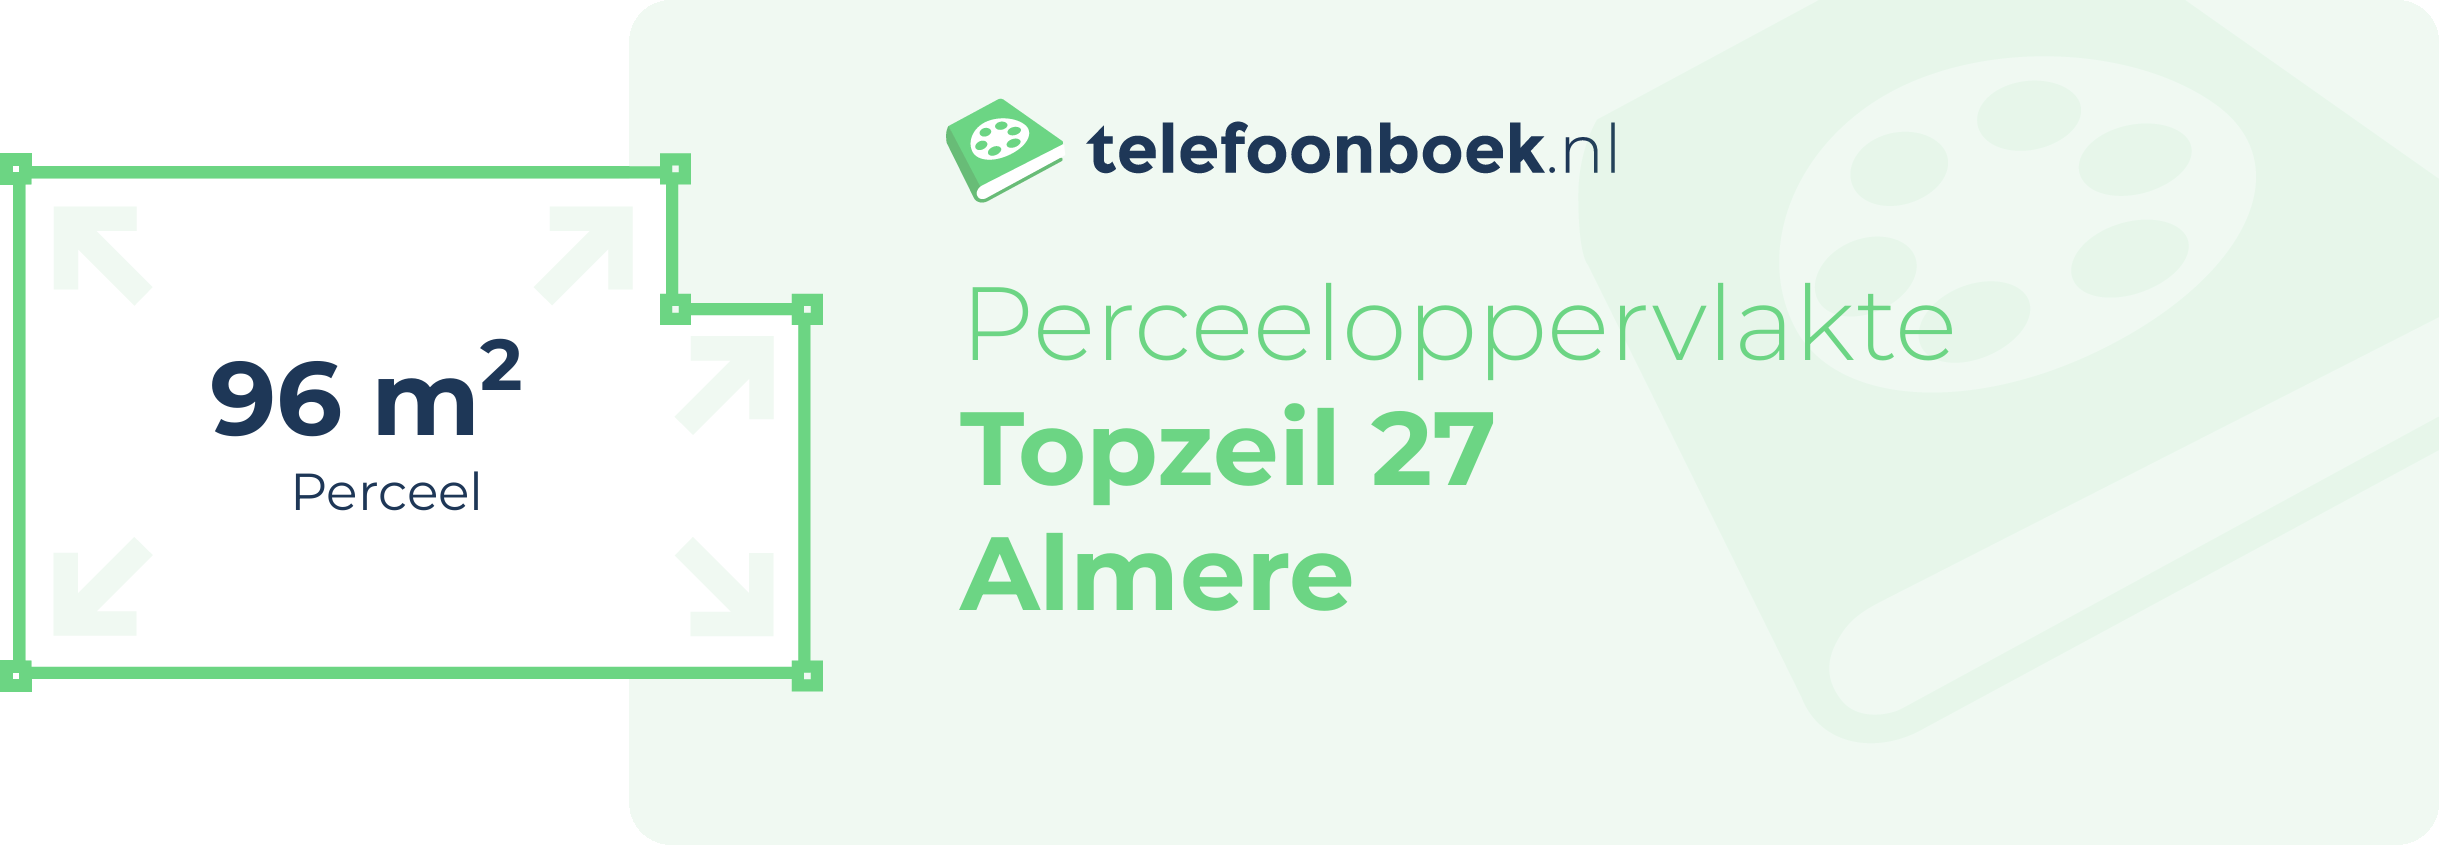 Perceeloppervlakte Topzeil 27 Almere